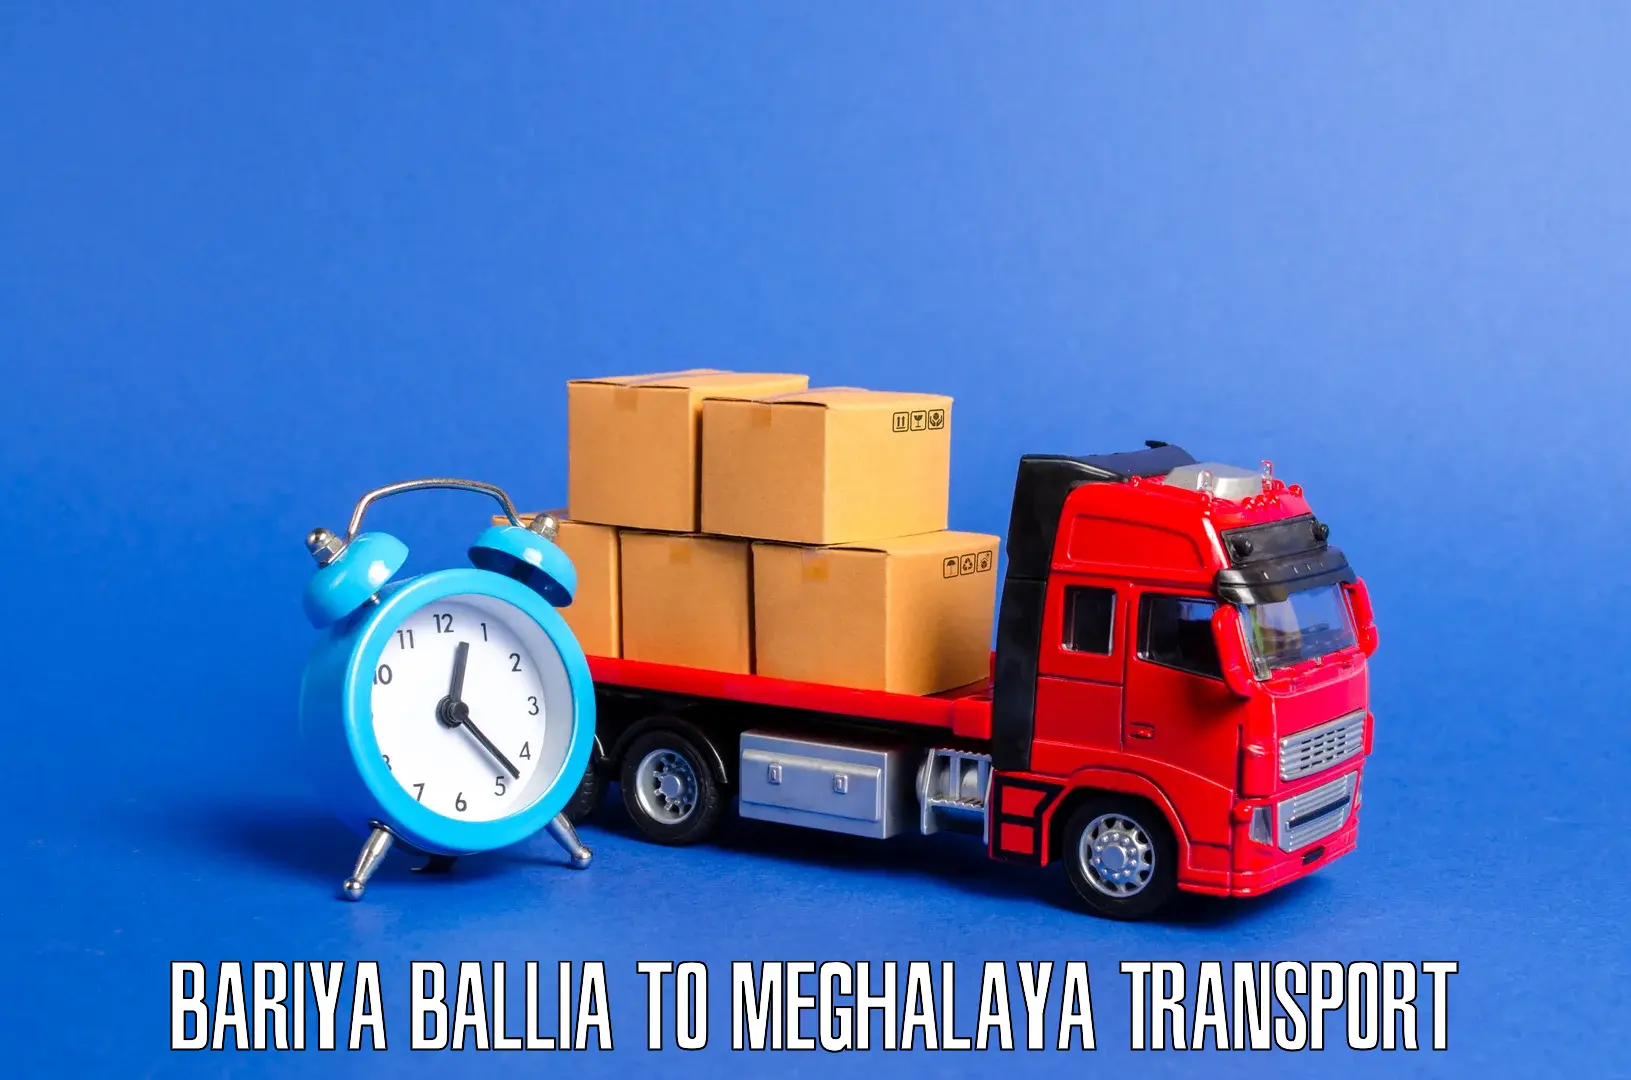 Bike transport service Bariya Ballia to Williamnagar